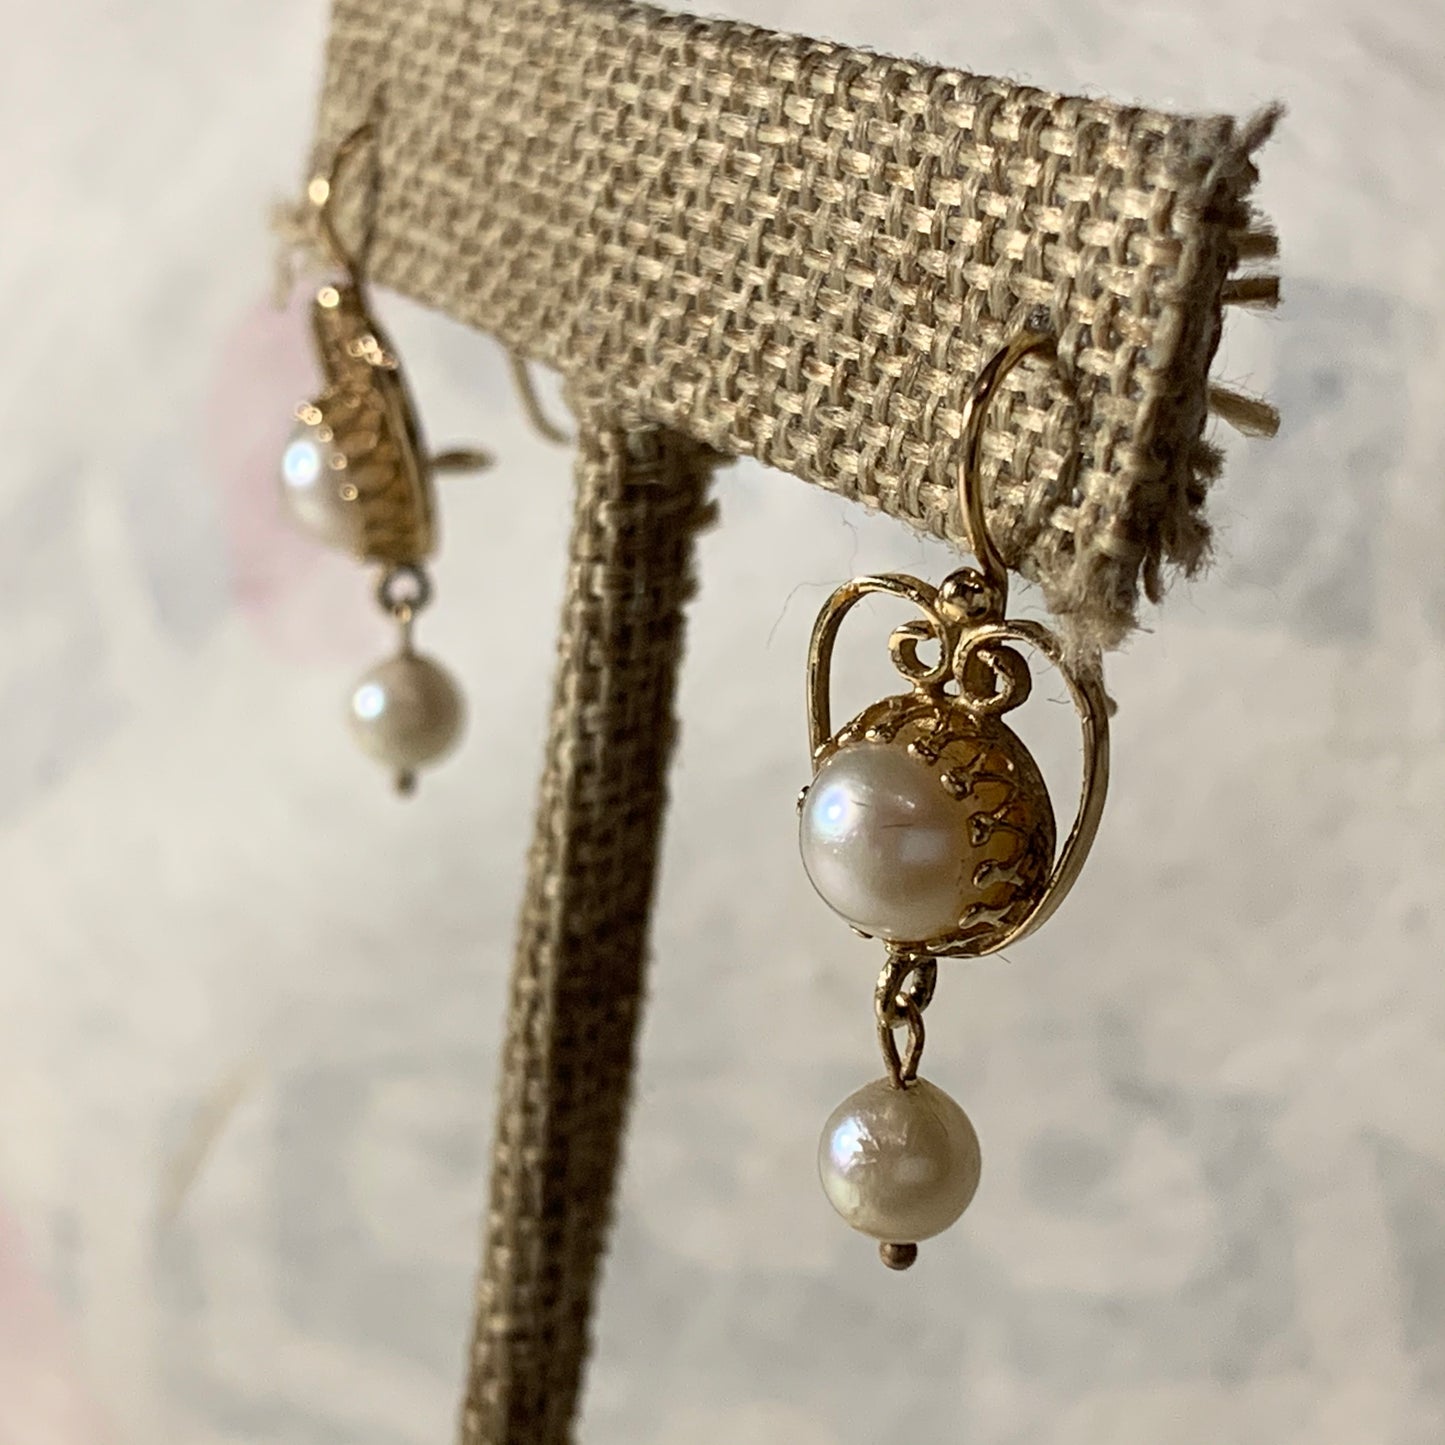 Vintage pearl earrings